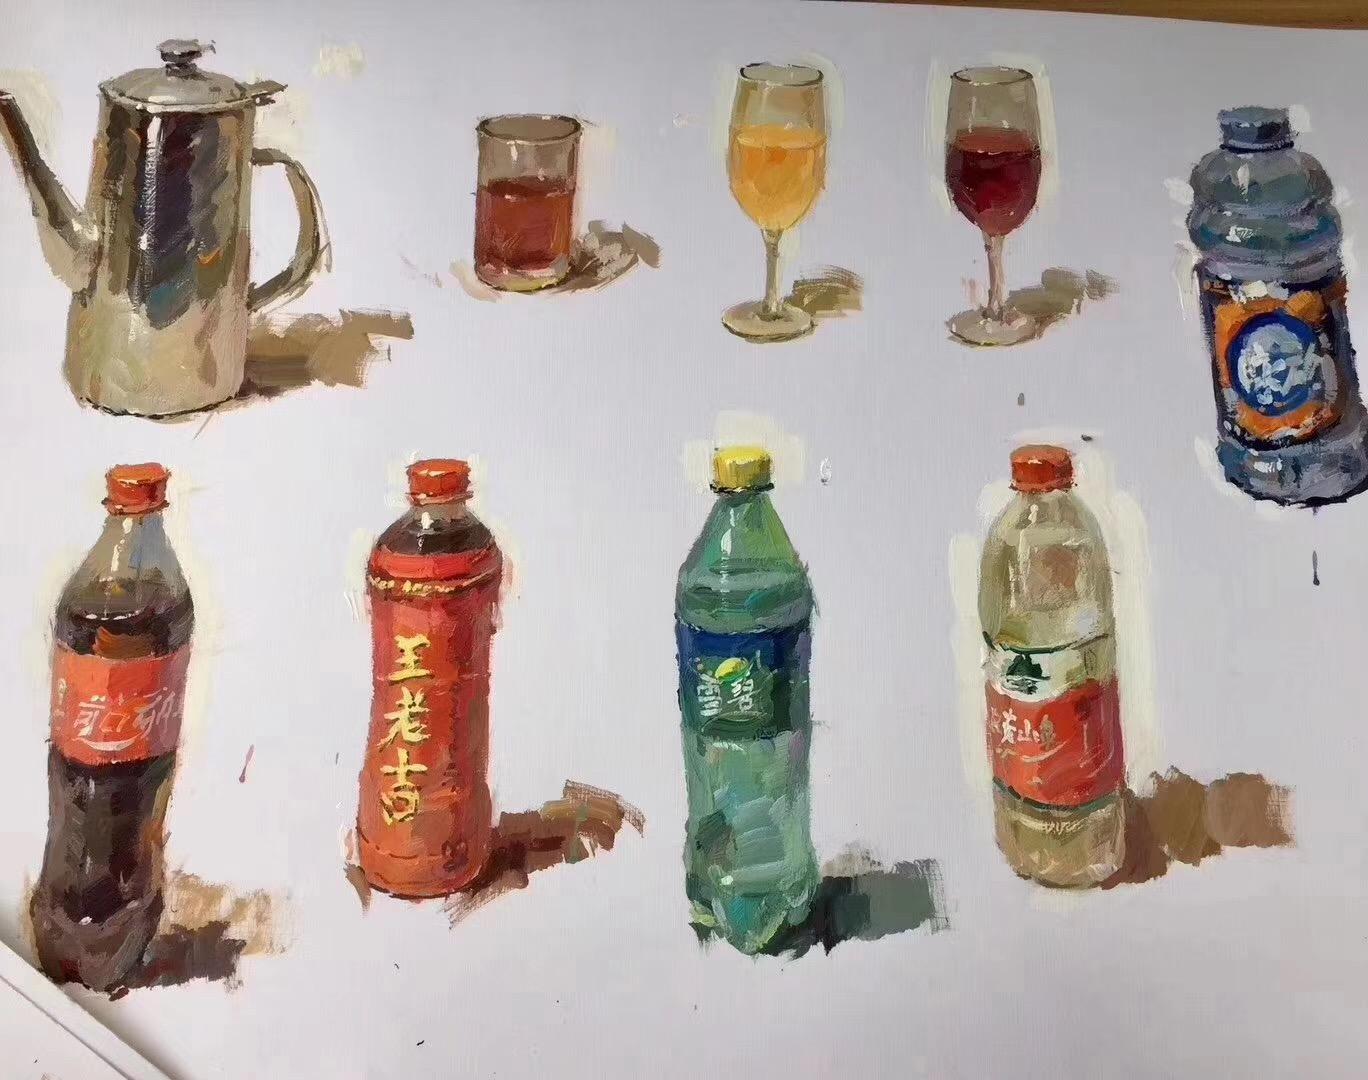 【北京京艺教育】色彩静物难点,塑料瓶的刻画解析,看完这篇零基础也能